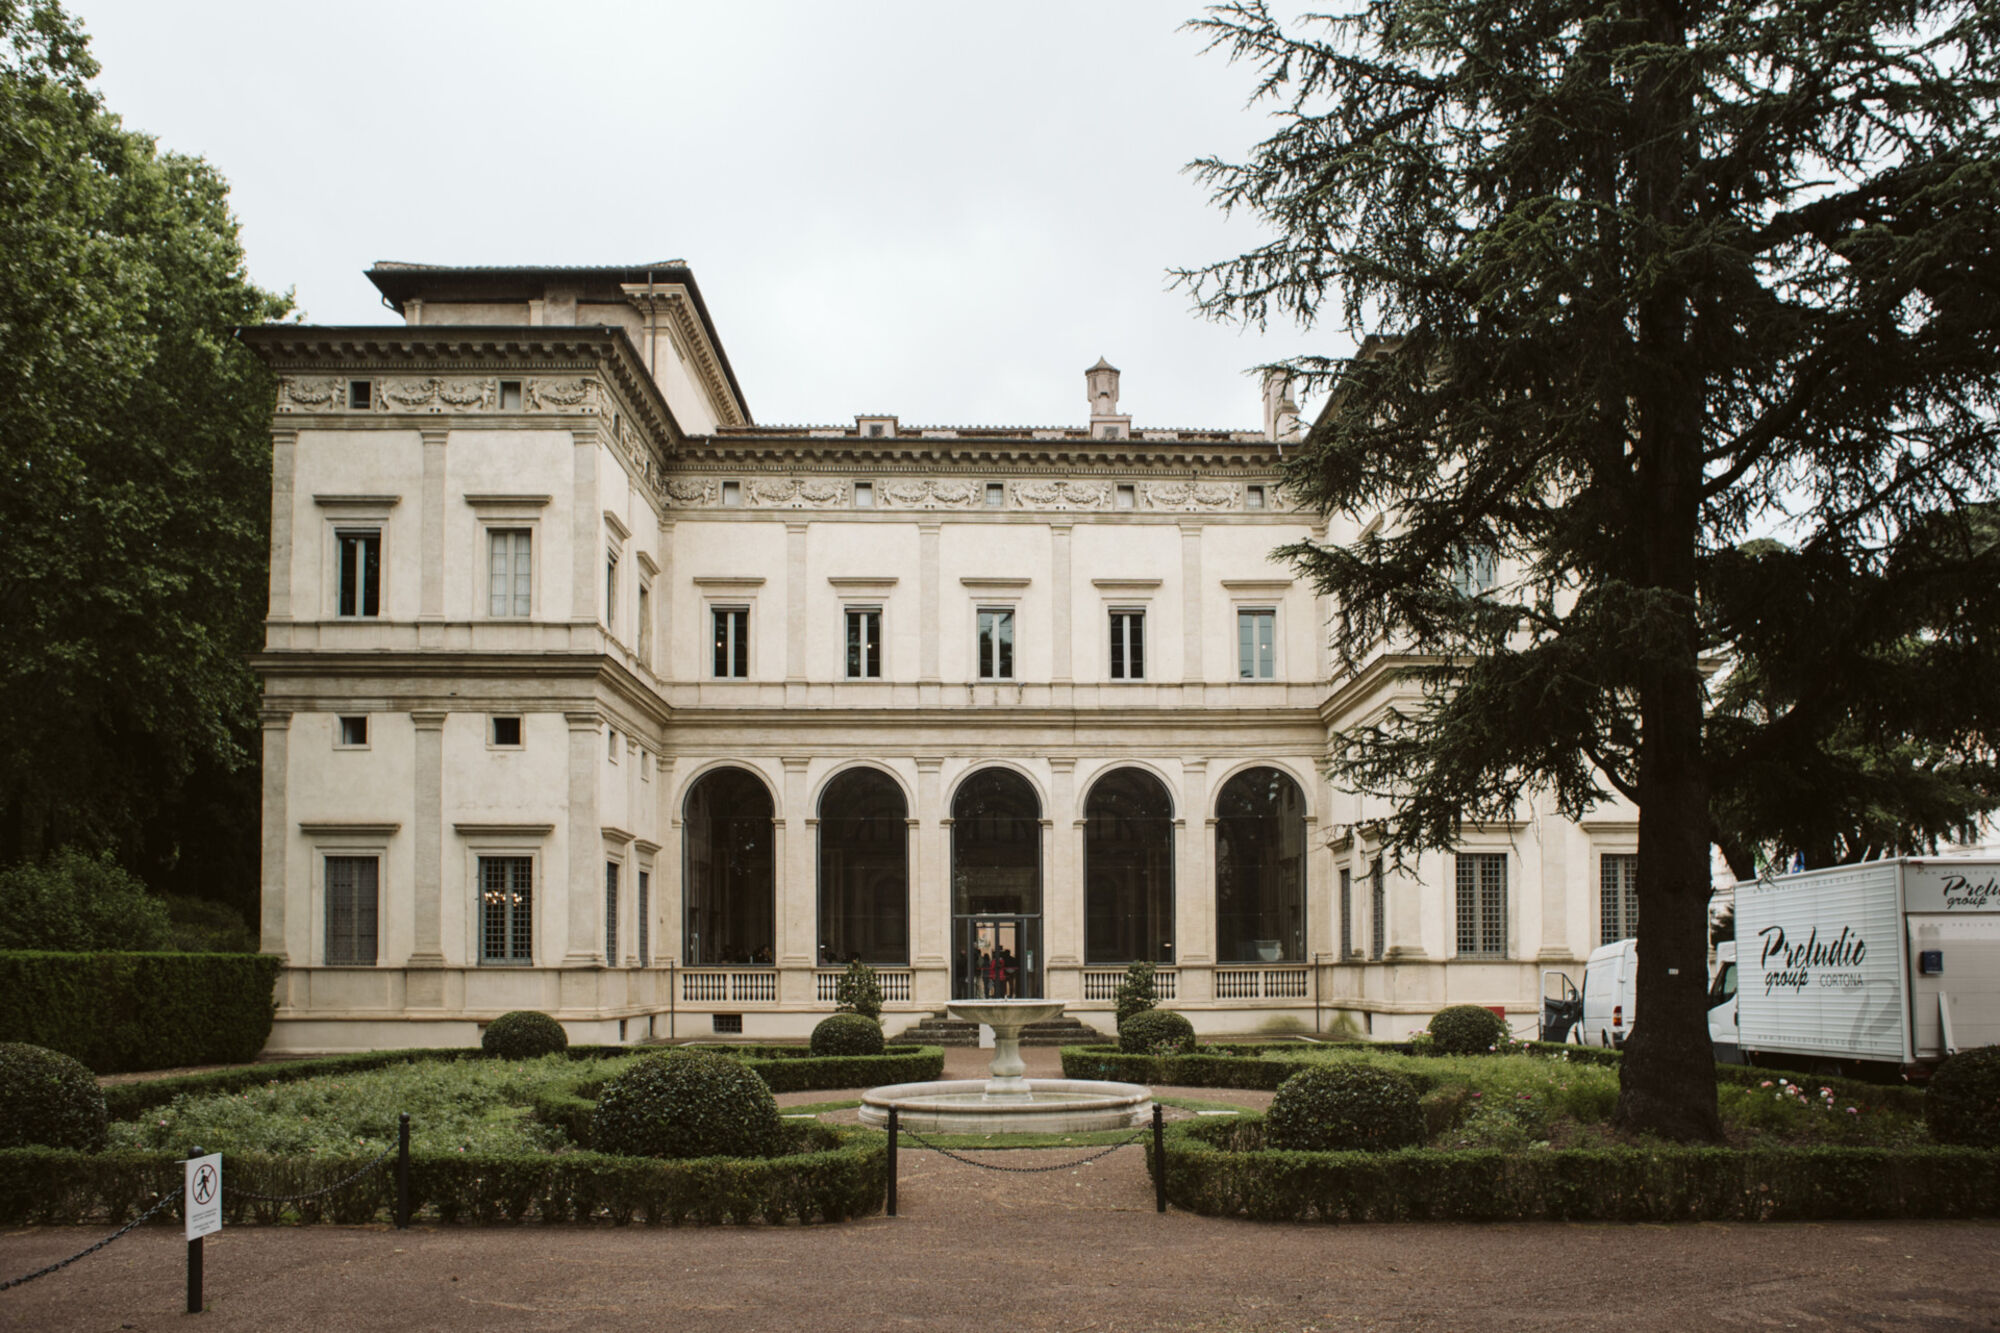  Villa Farnesina, Rome 

   
